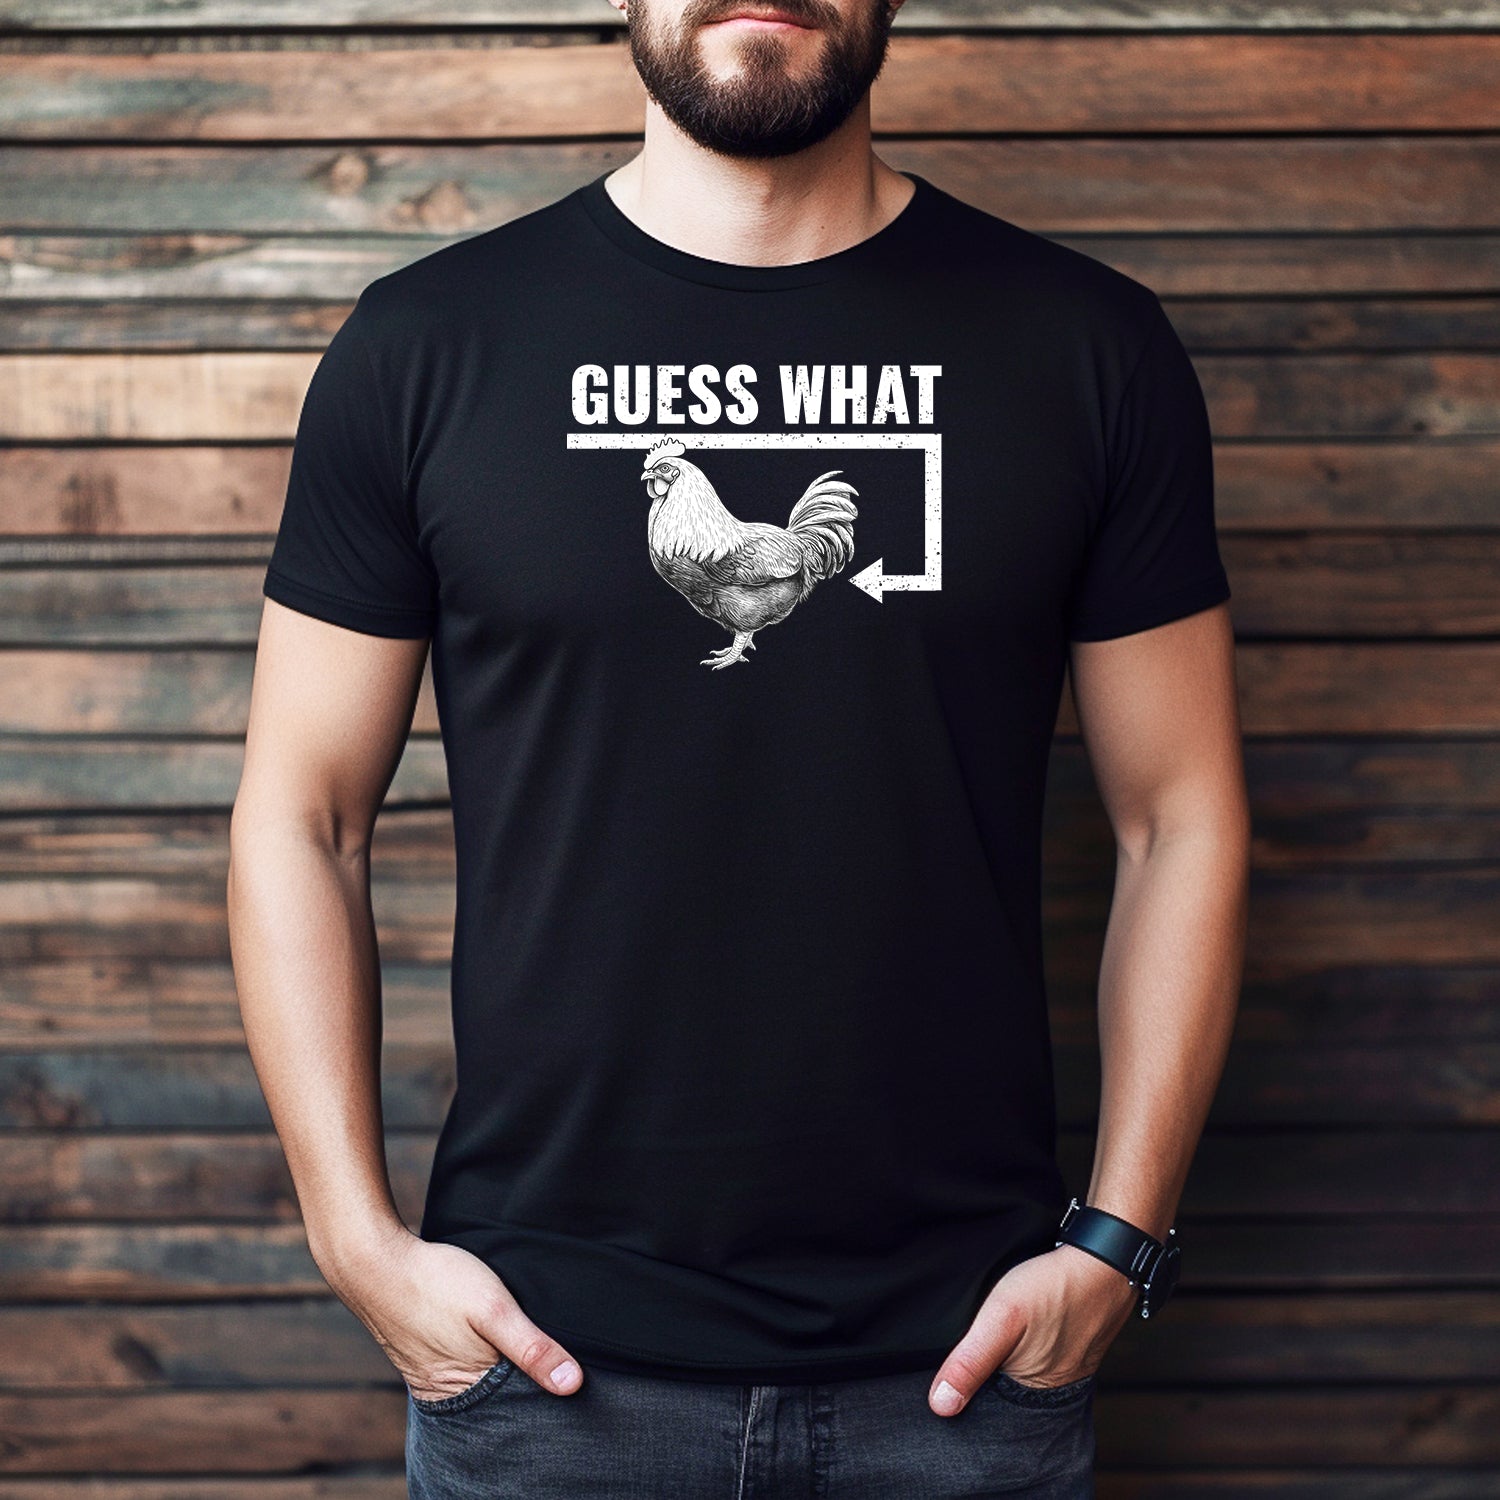 "Guess What, Chicken Butt" Premium Midweight Ringspun Cotton T-Shirt - Mens/Womens Fits